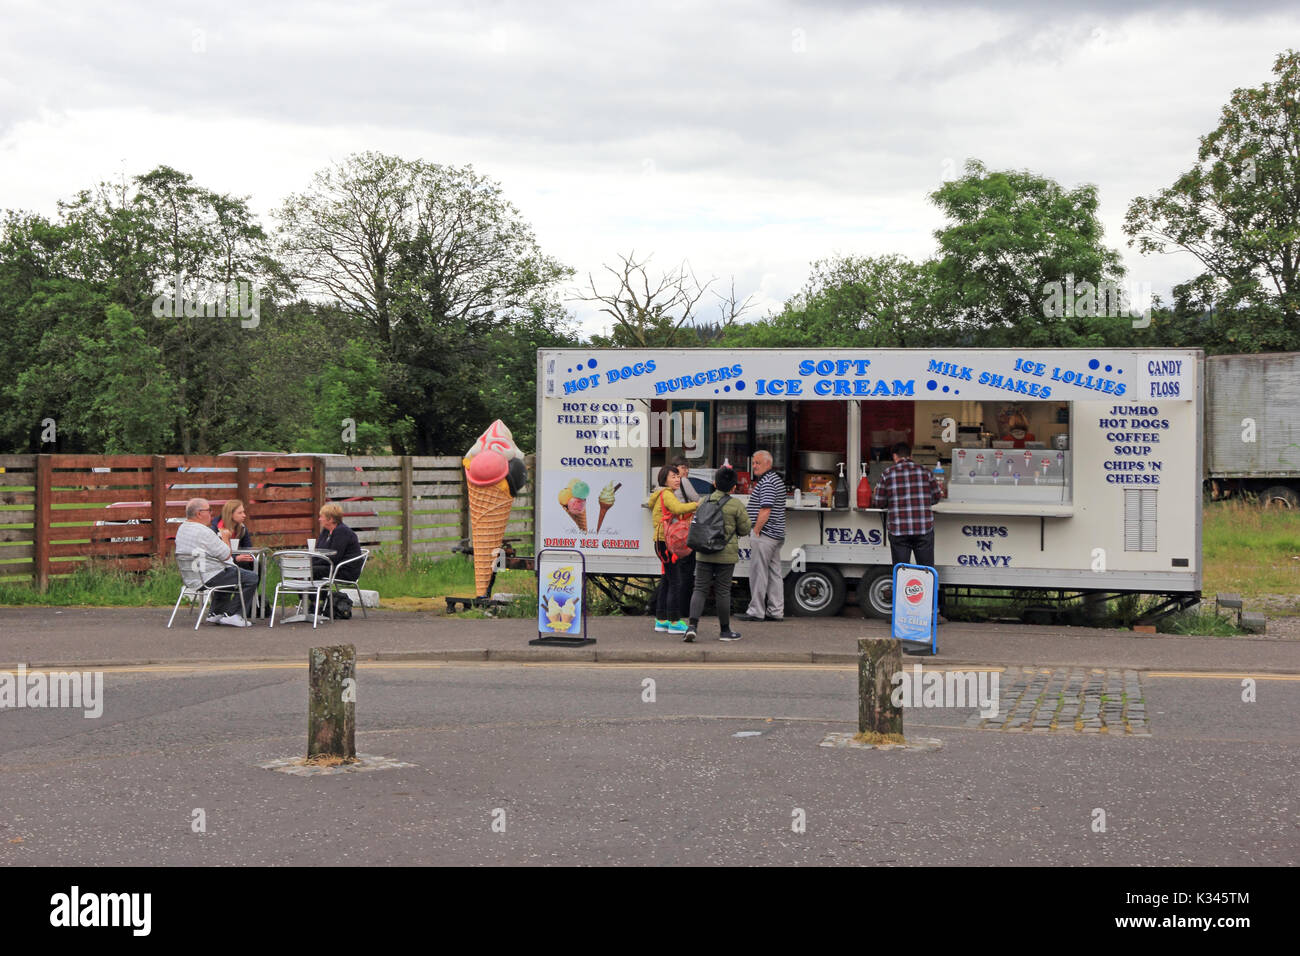 Burger van in car park, Aberfoyle, Scotland Stock Photo - Alamy